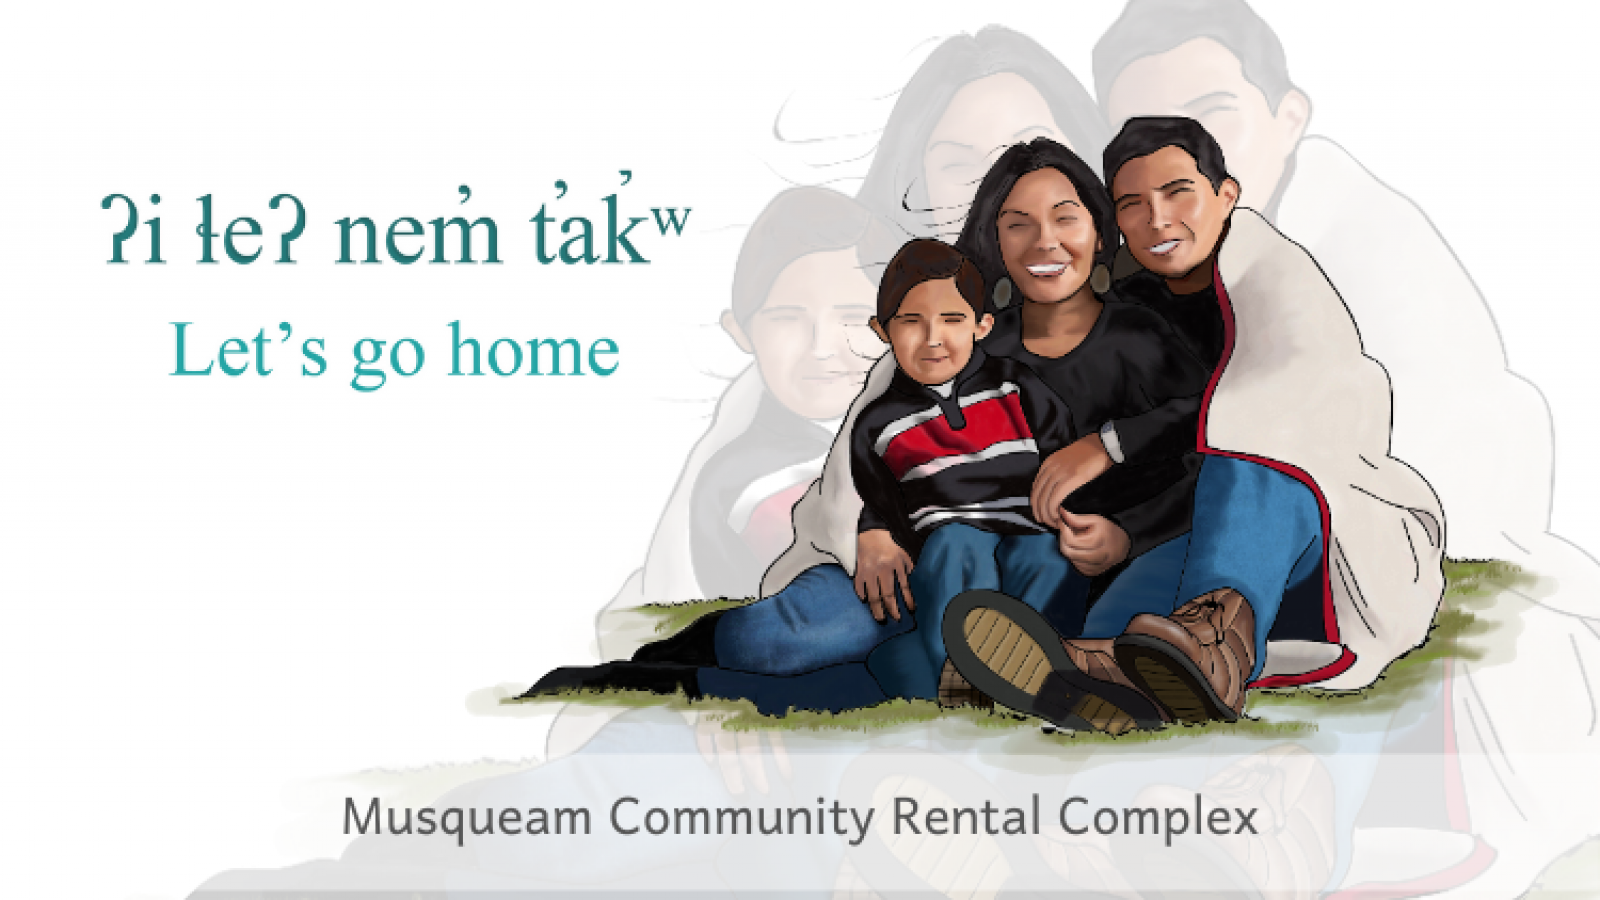 Musqueam Community Rental Complex